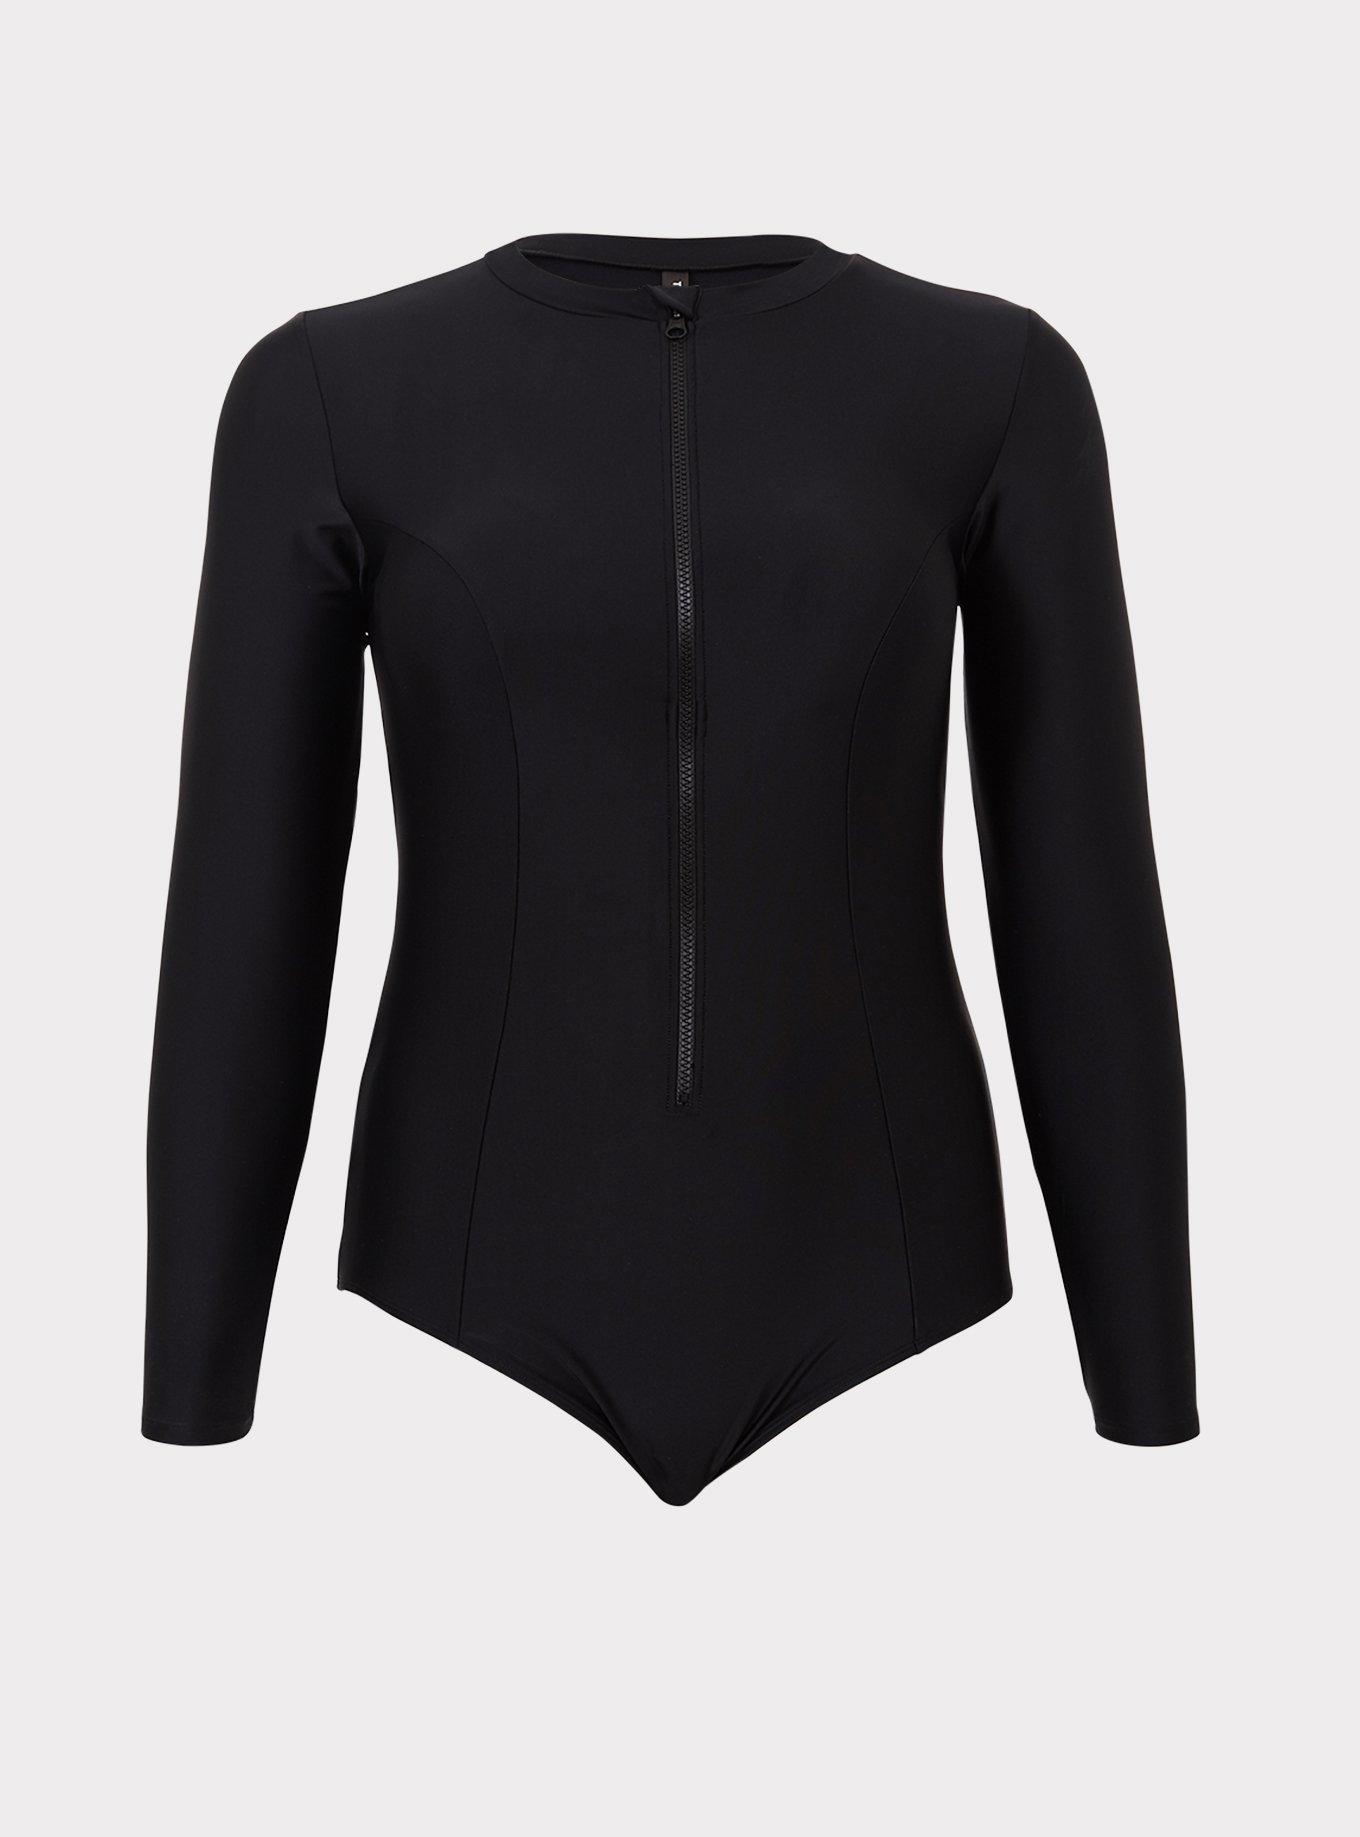 Jikolililili Women 2 Piece Rash Guard Long Sleeve Zipper Bathing Suit with  Bottom Built in Bra Swimsuit 2023 Plus Size Swimsuit 